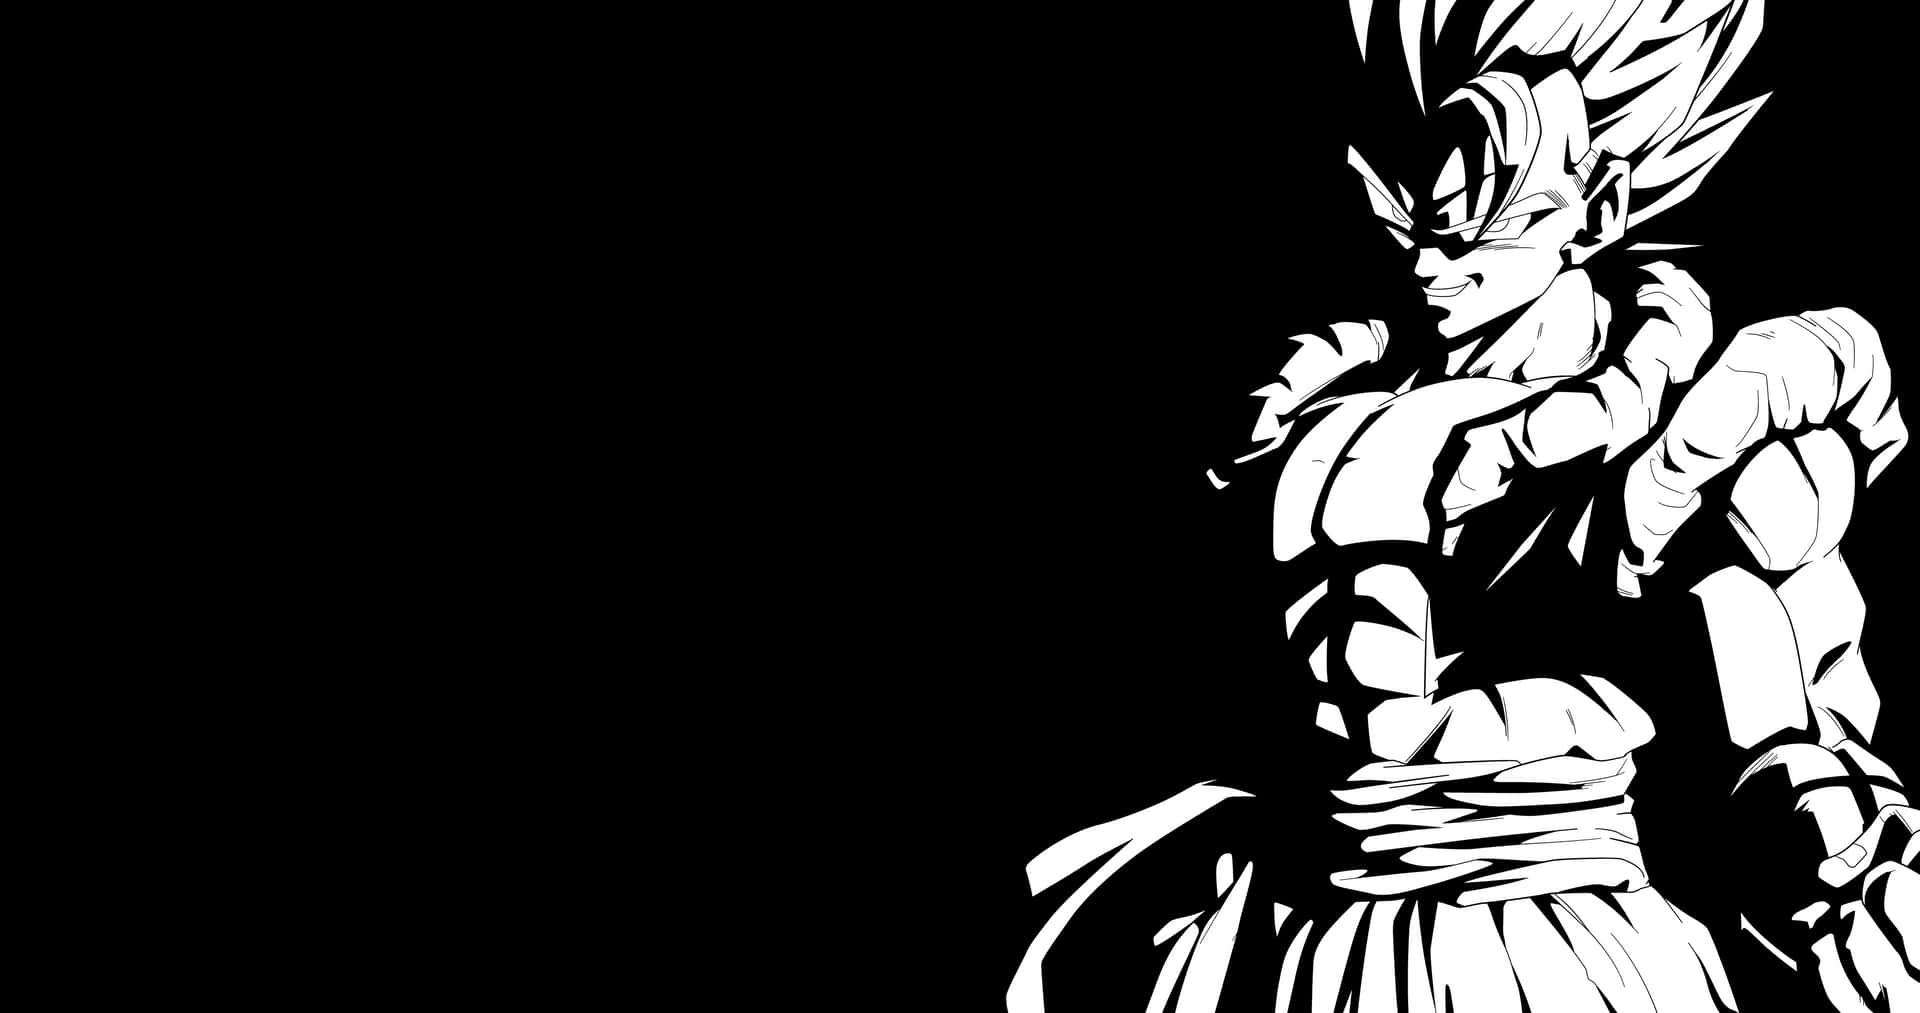 Vegeta, den ikoniske Dragon Ball Z-karakter, i sort og hvid. Wallpaper